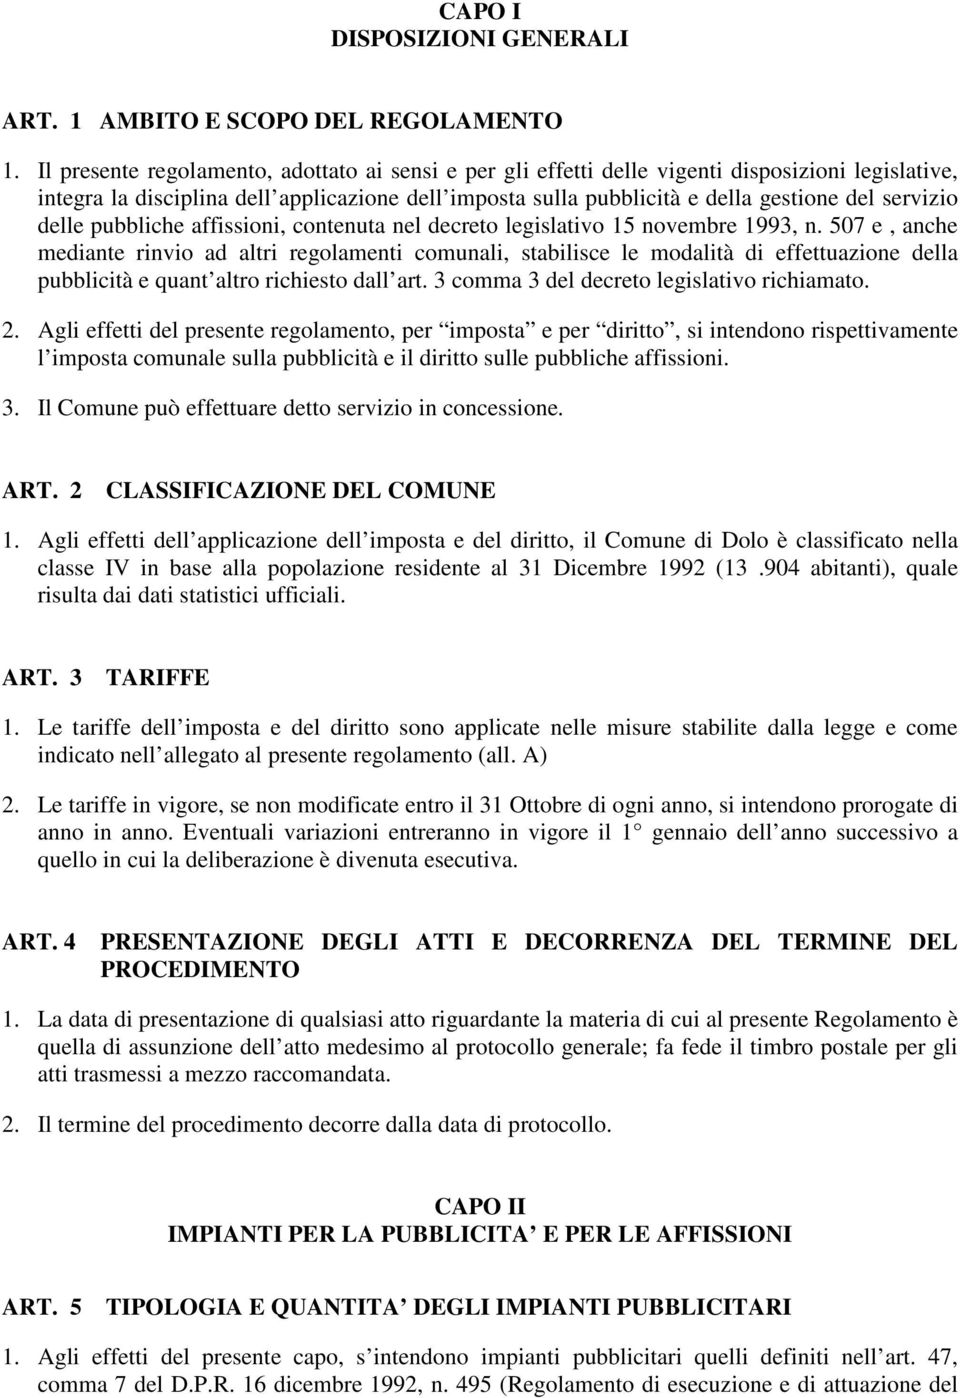 servizio delle pubbliche affissioni, contenuta nel decreto legislativo 15 novembre 1993, n.